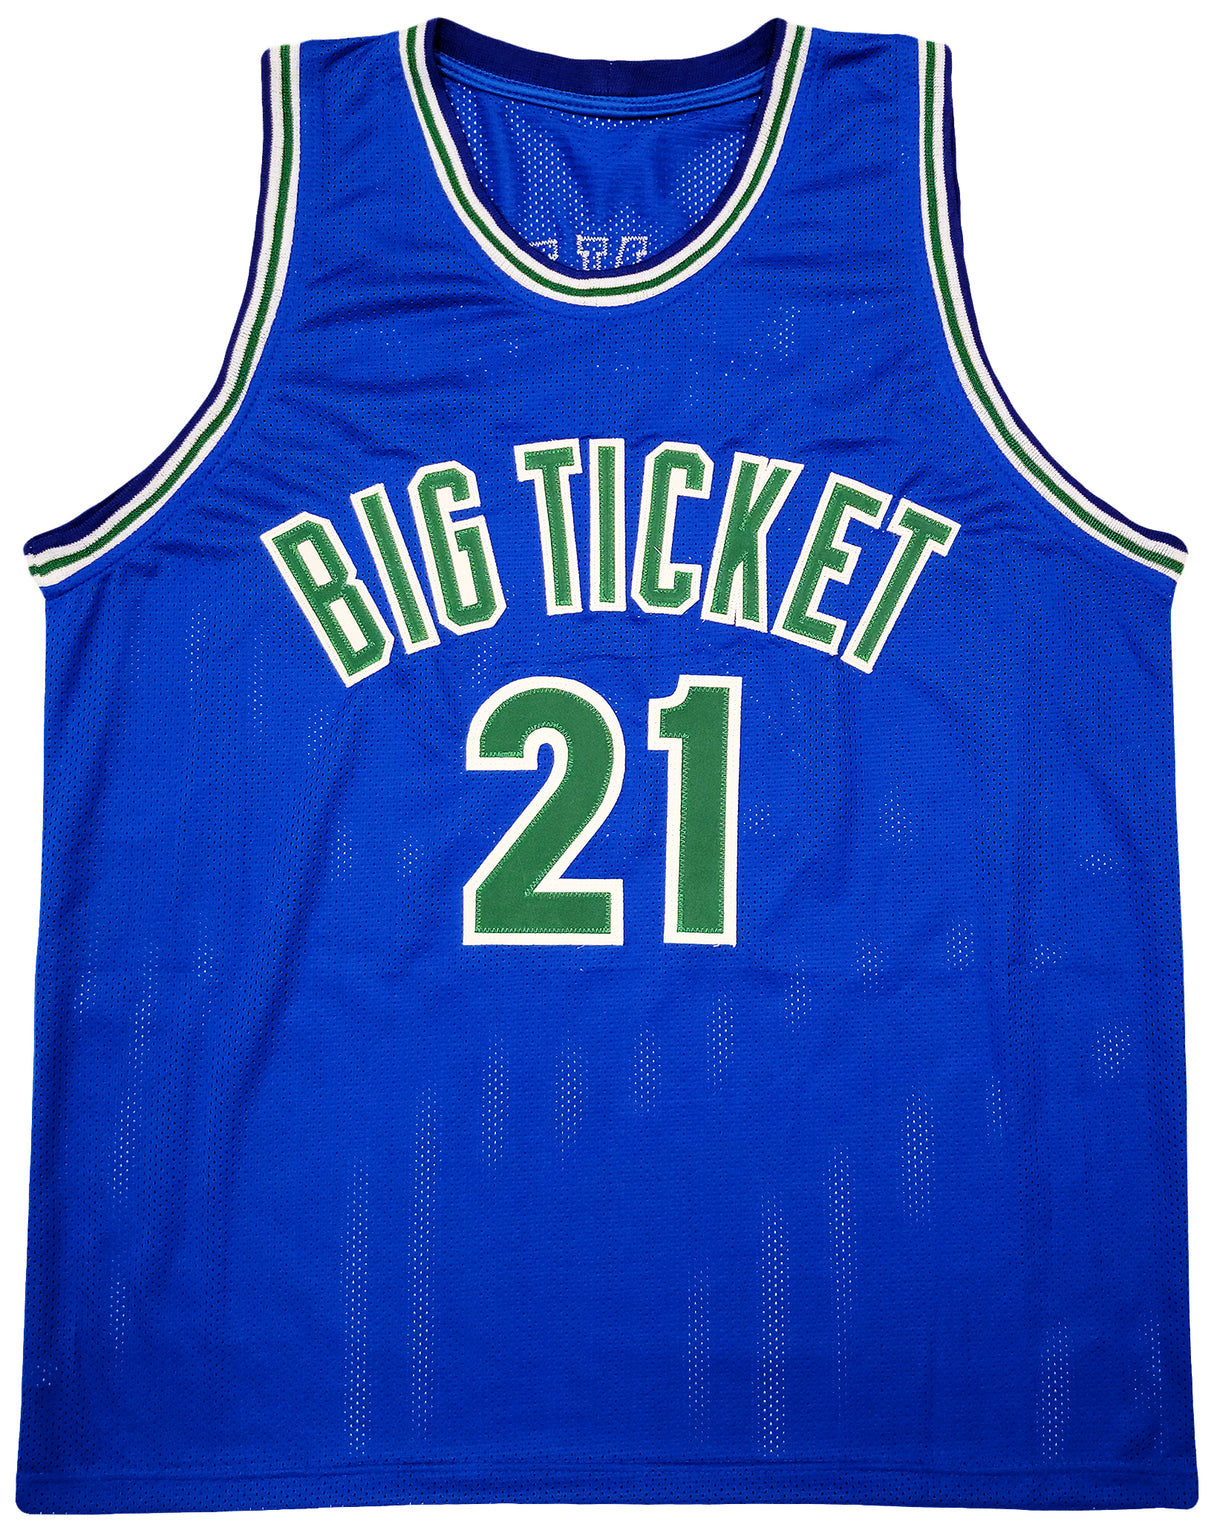 Minnesota Timberwolves Kevin Garnett Autographed Blue Jersey Beckett BAS QR Stock #203549